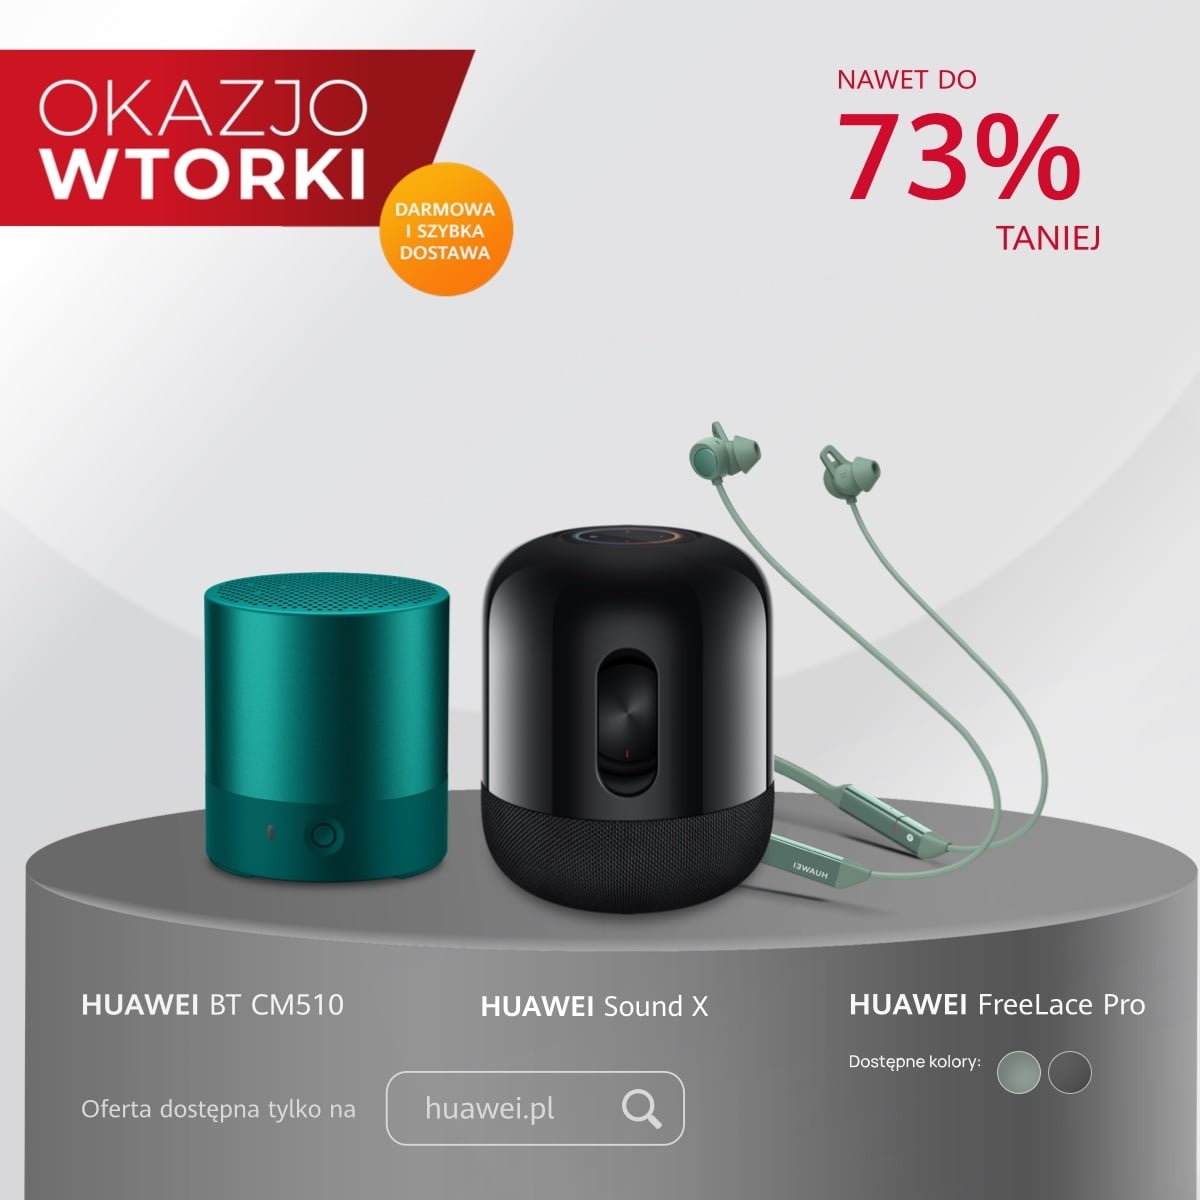 OkazjoWTORKI Sound X, FreeLace Pro i Huawei BT CM510